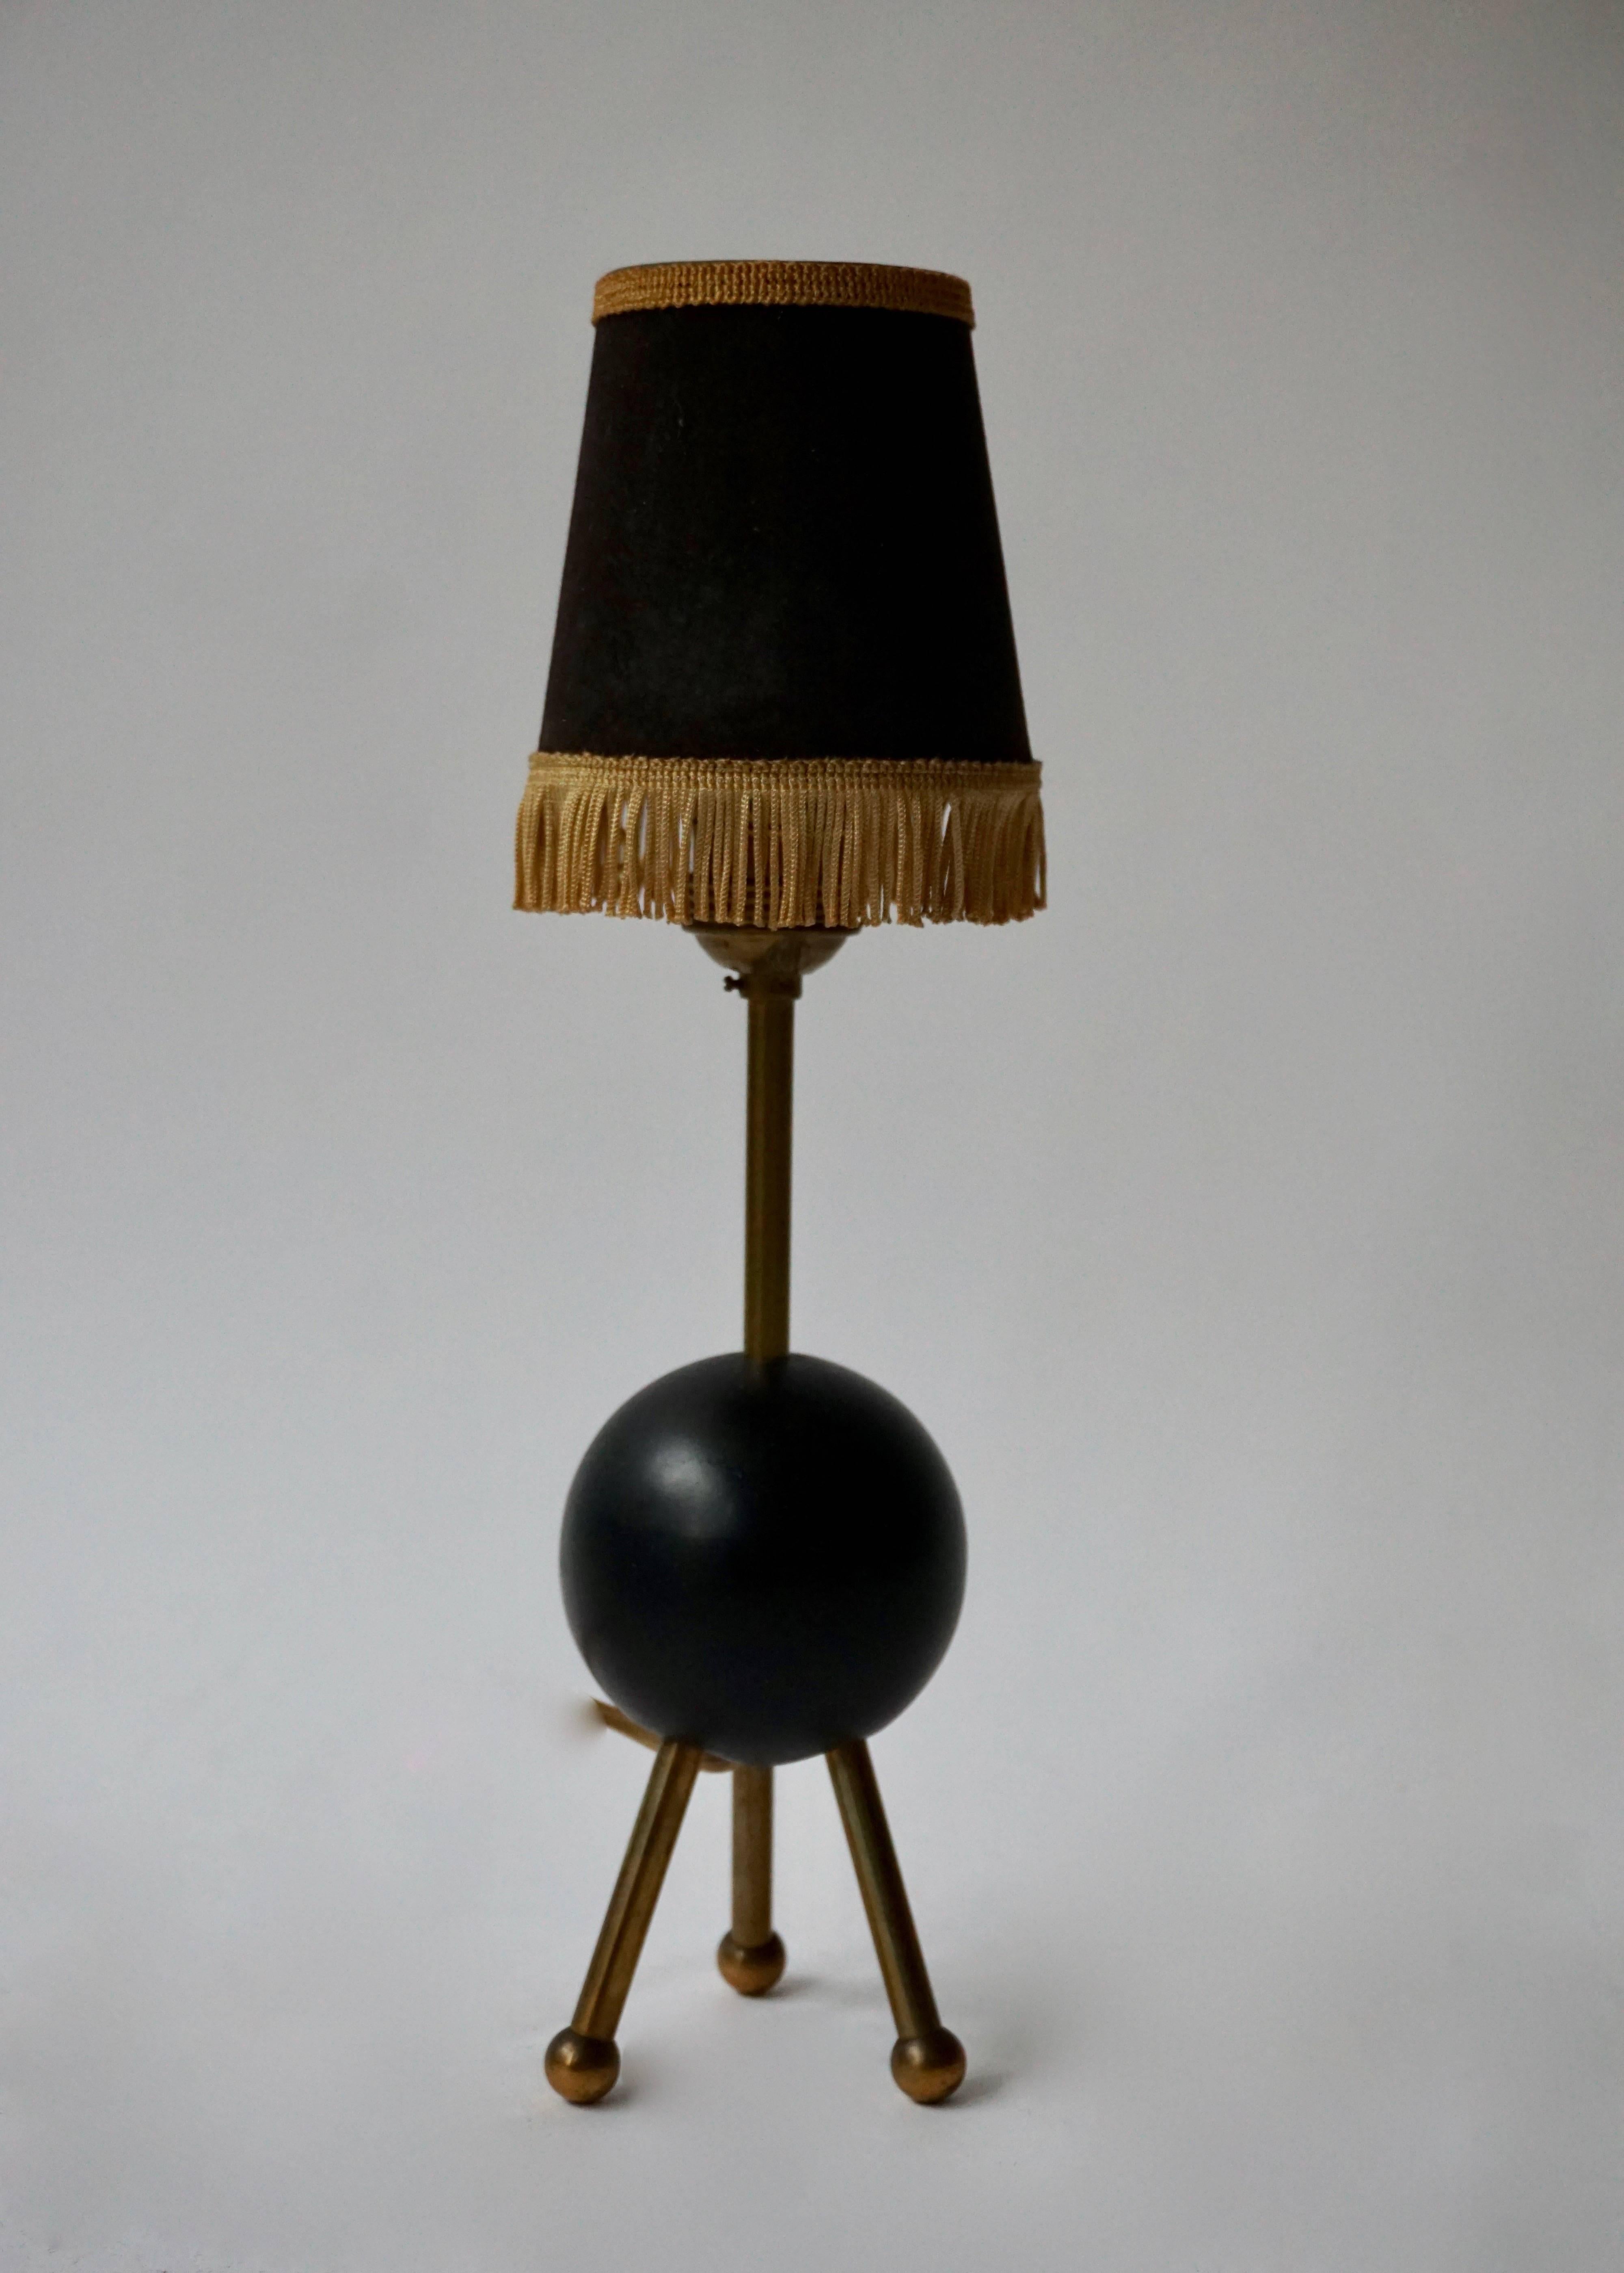 Lampe de table italienne des années 1950 en laiton.
Hauteur avec abat-jour : 38 cm.
Hauteur sans abat-jour : 28 cm.
Diamètre de la bague 9 cm.

L'abat-jour n'est pas inclus dans le prix.